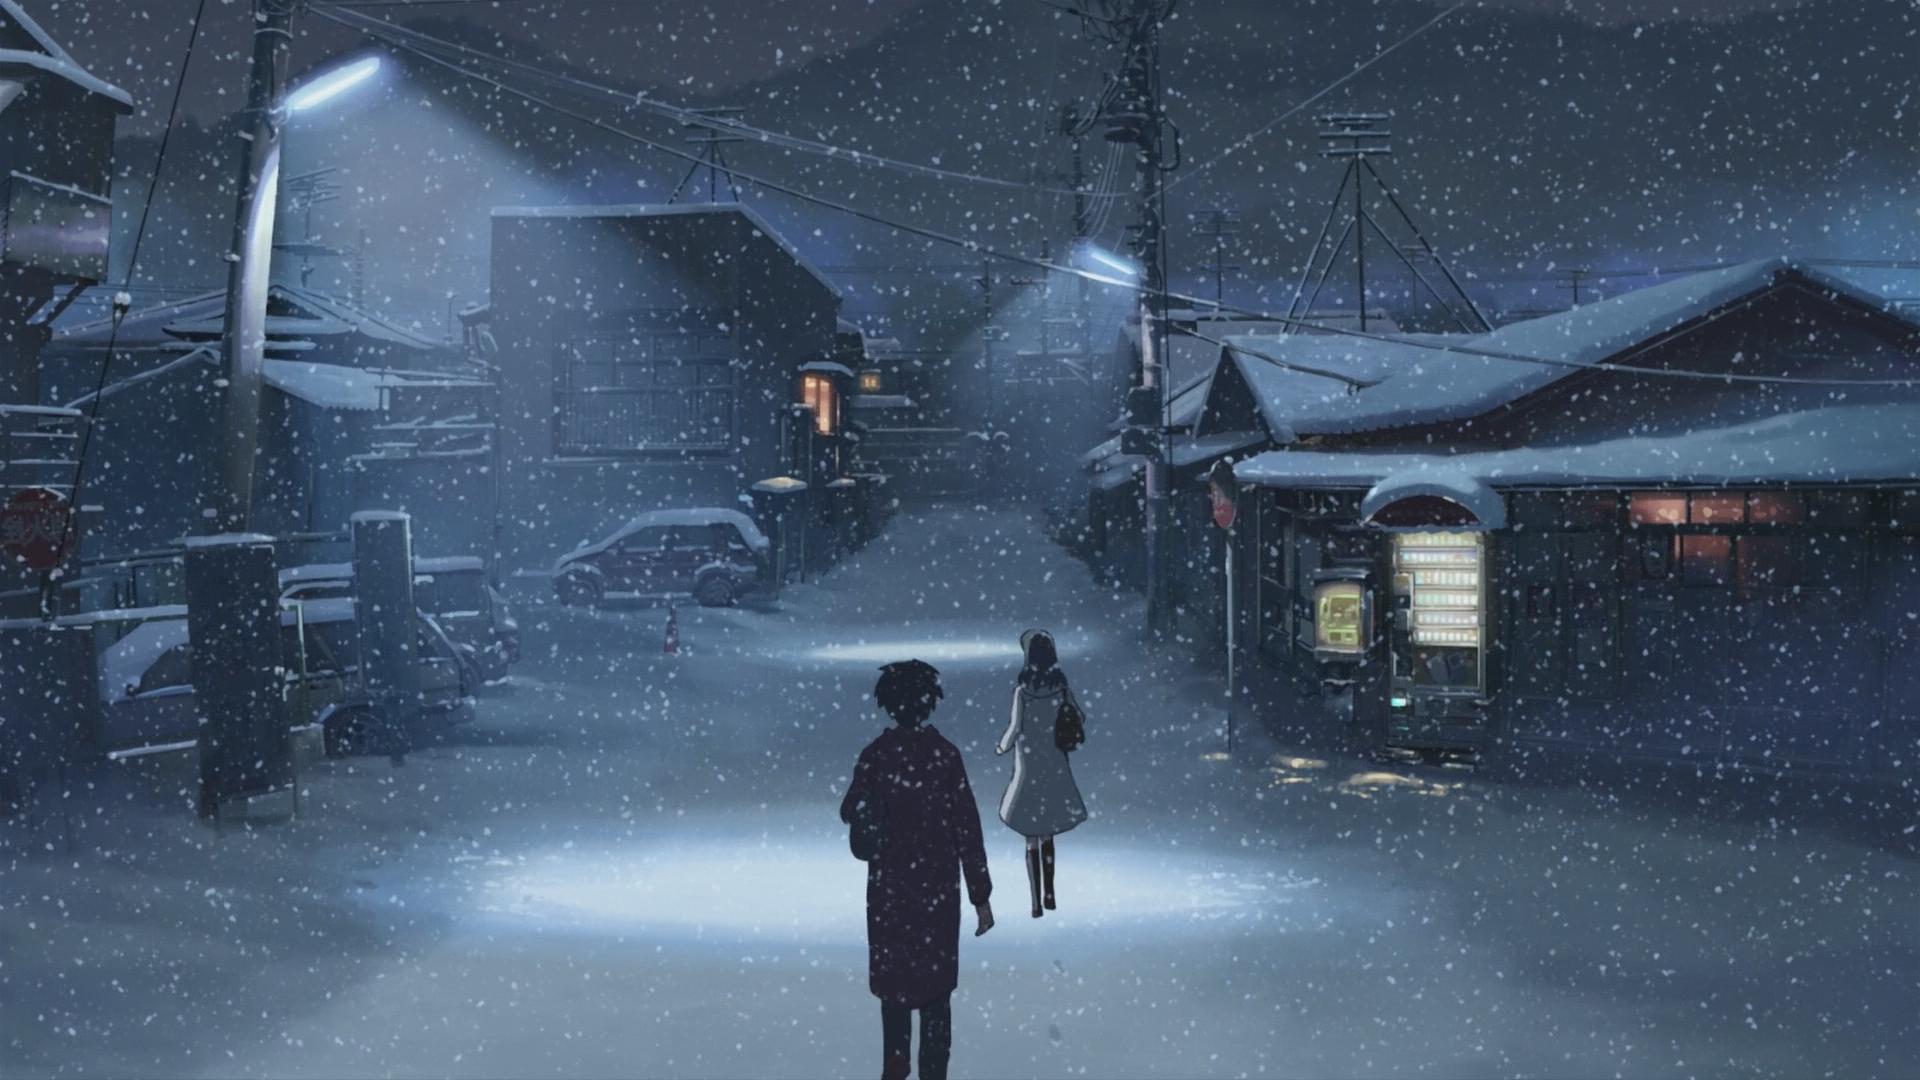 anime winter wallpaper,juego de acción y aventura,nieve,juego de pc,oscuridad,atmósfera